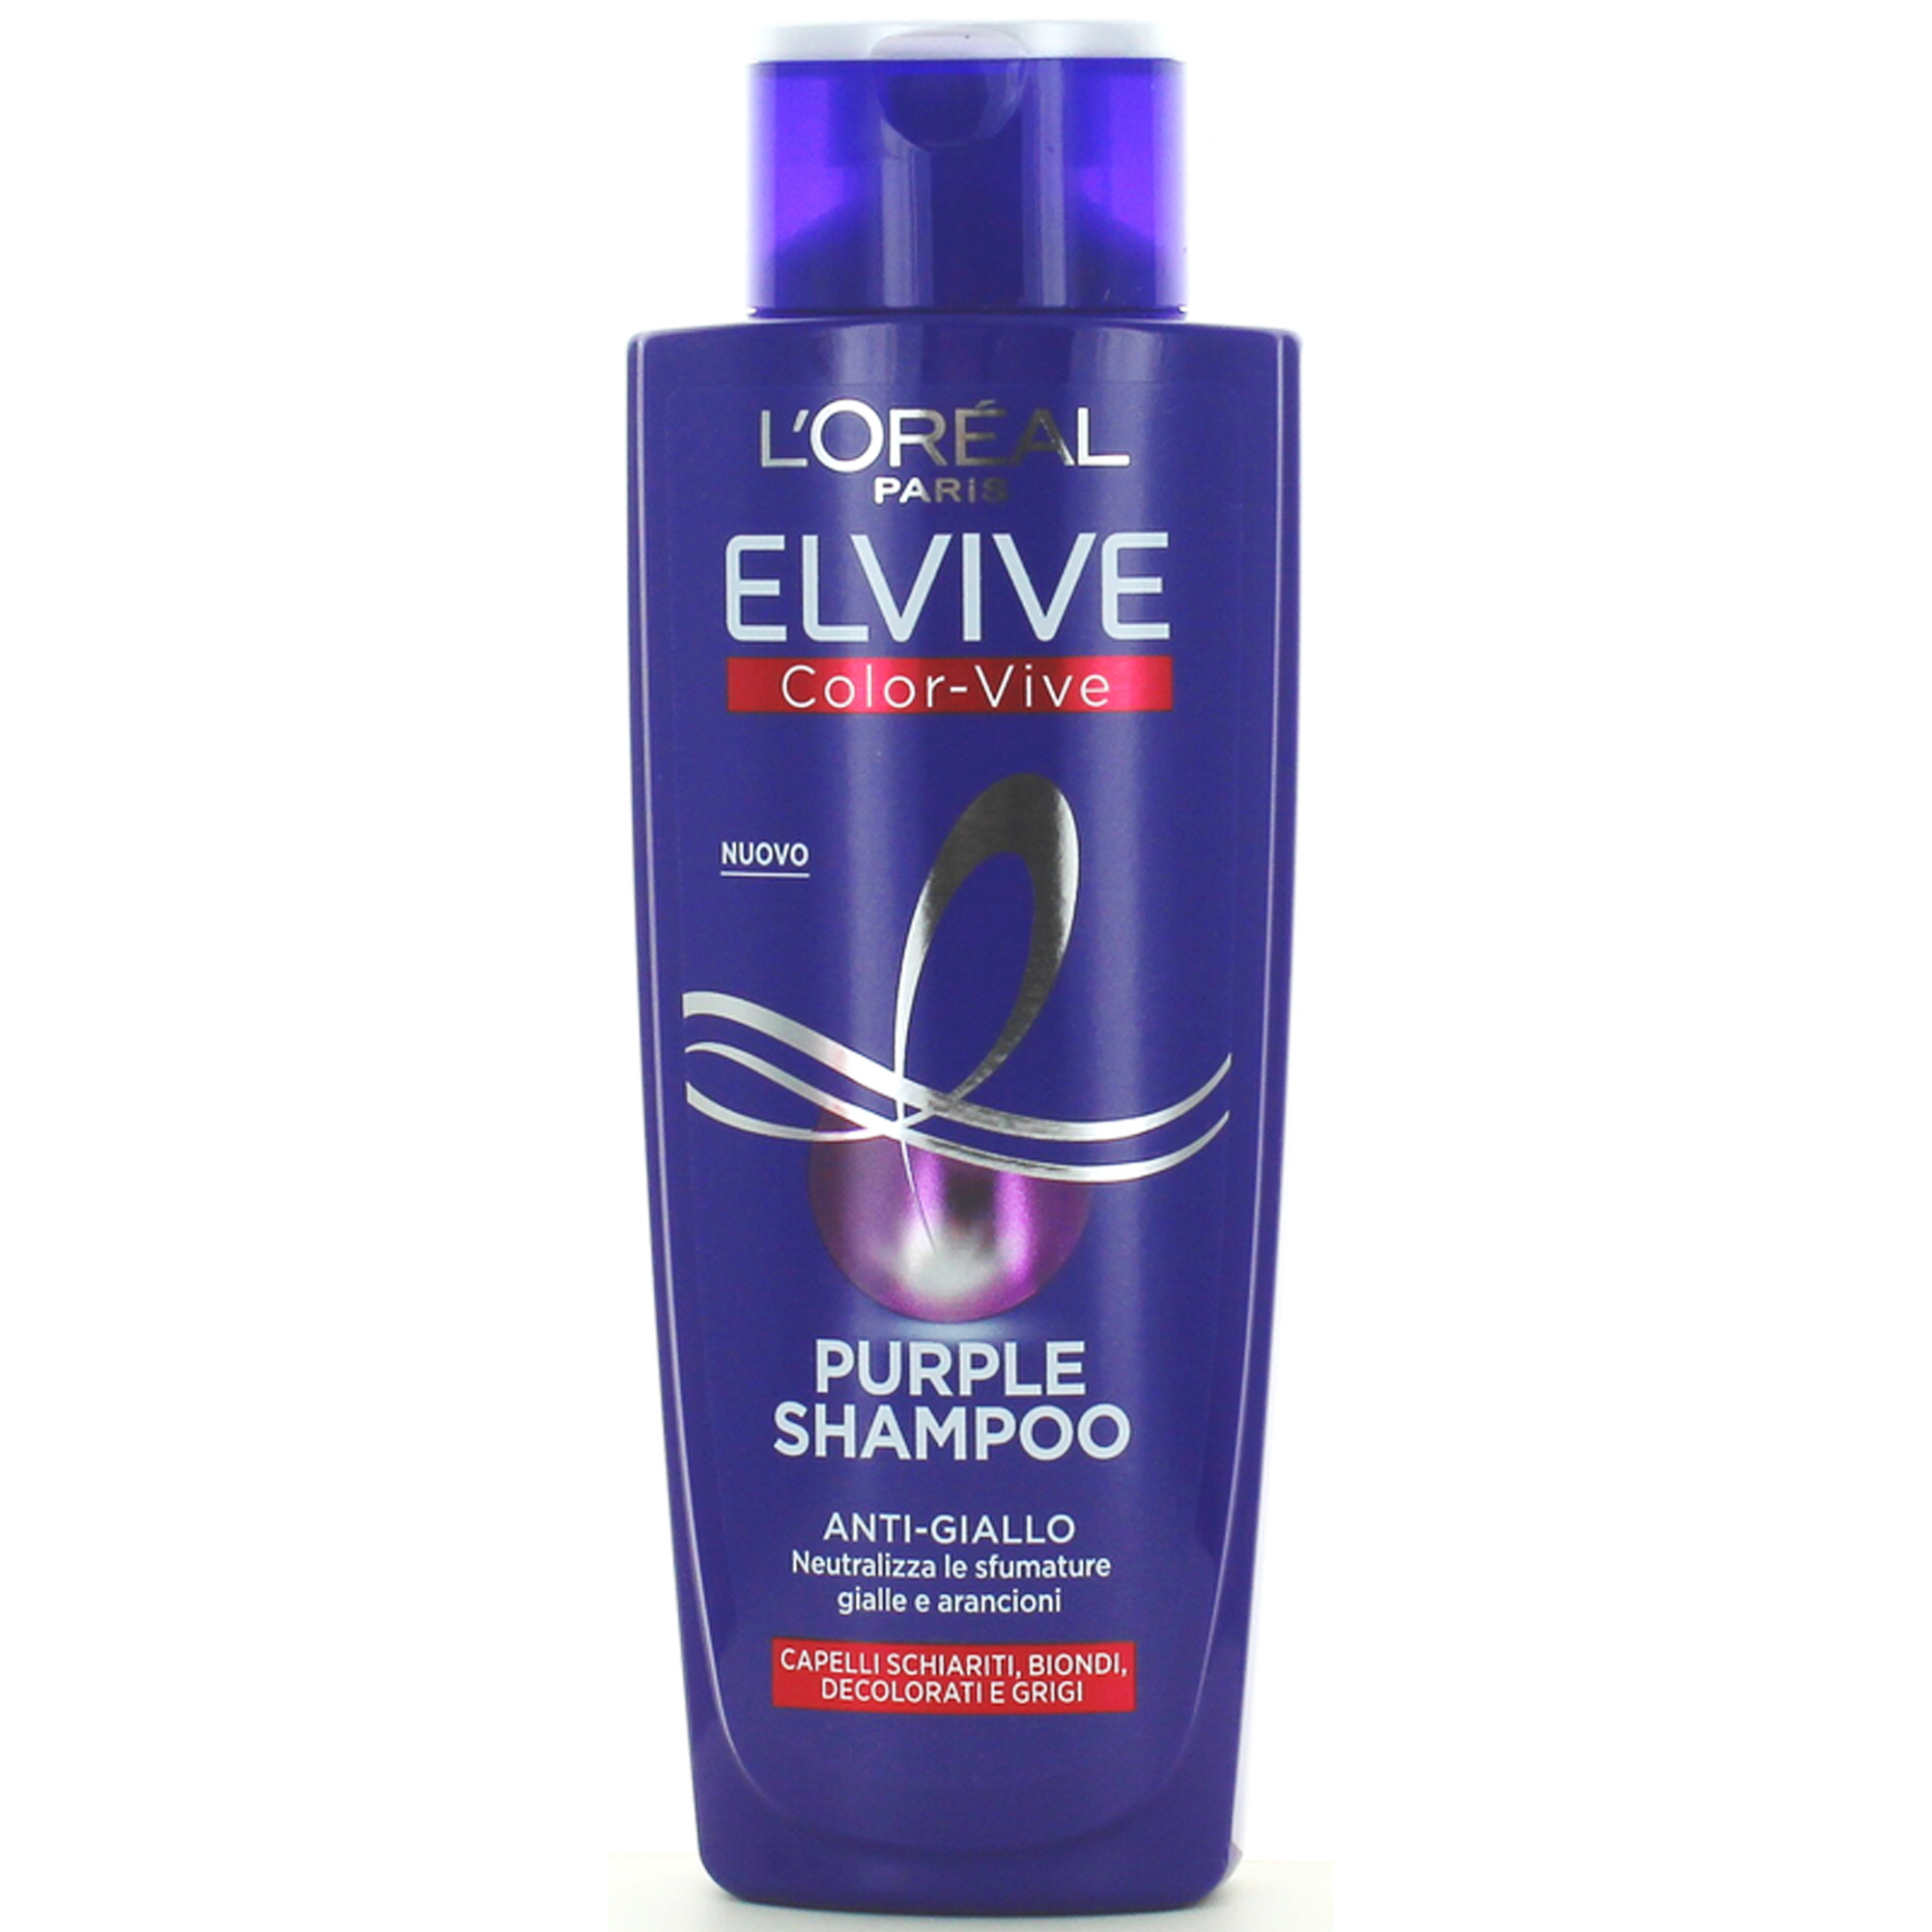 L'Oreal Elvive Color-Vive Shampoo Purple Anti-Giallo